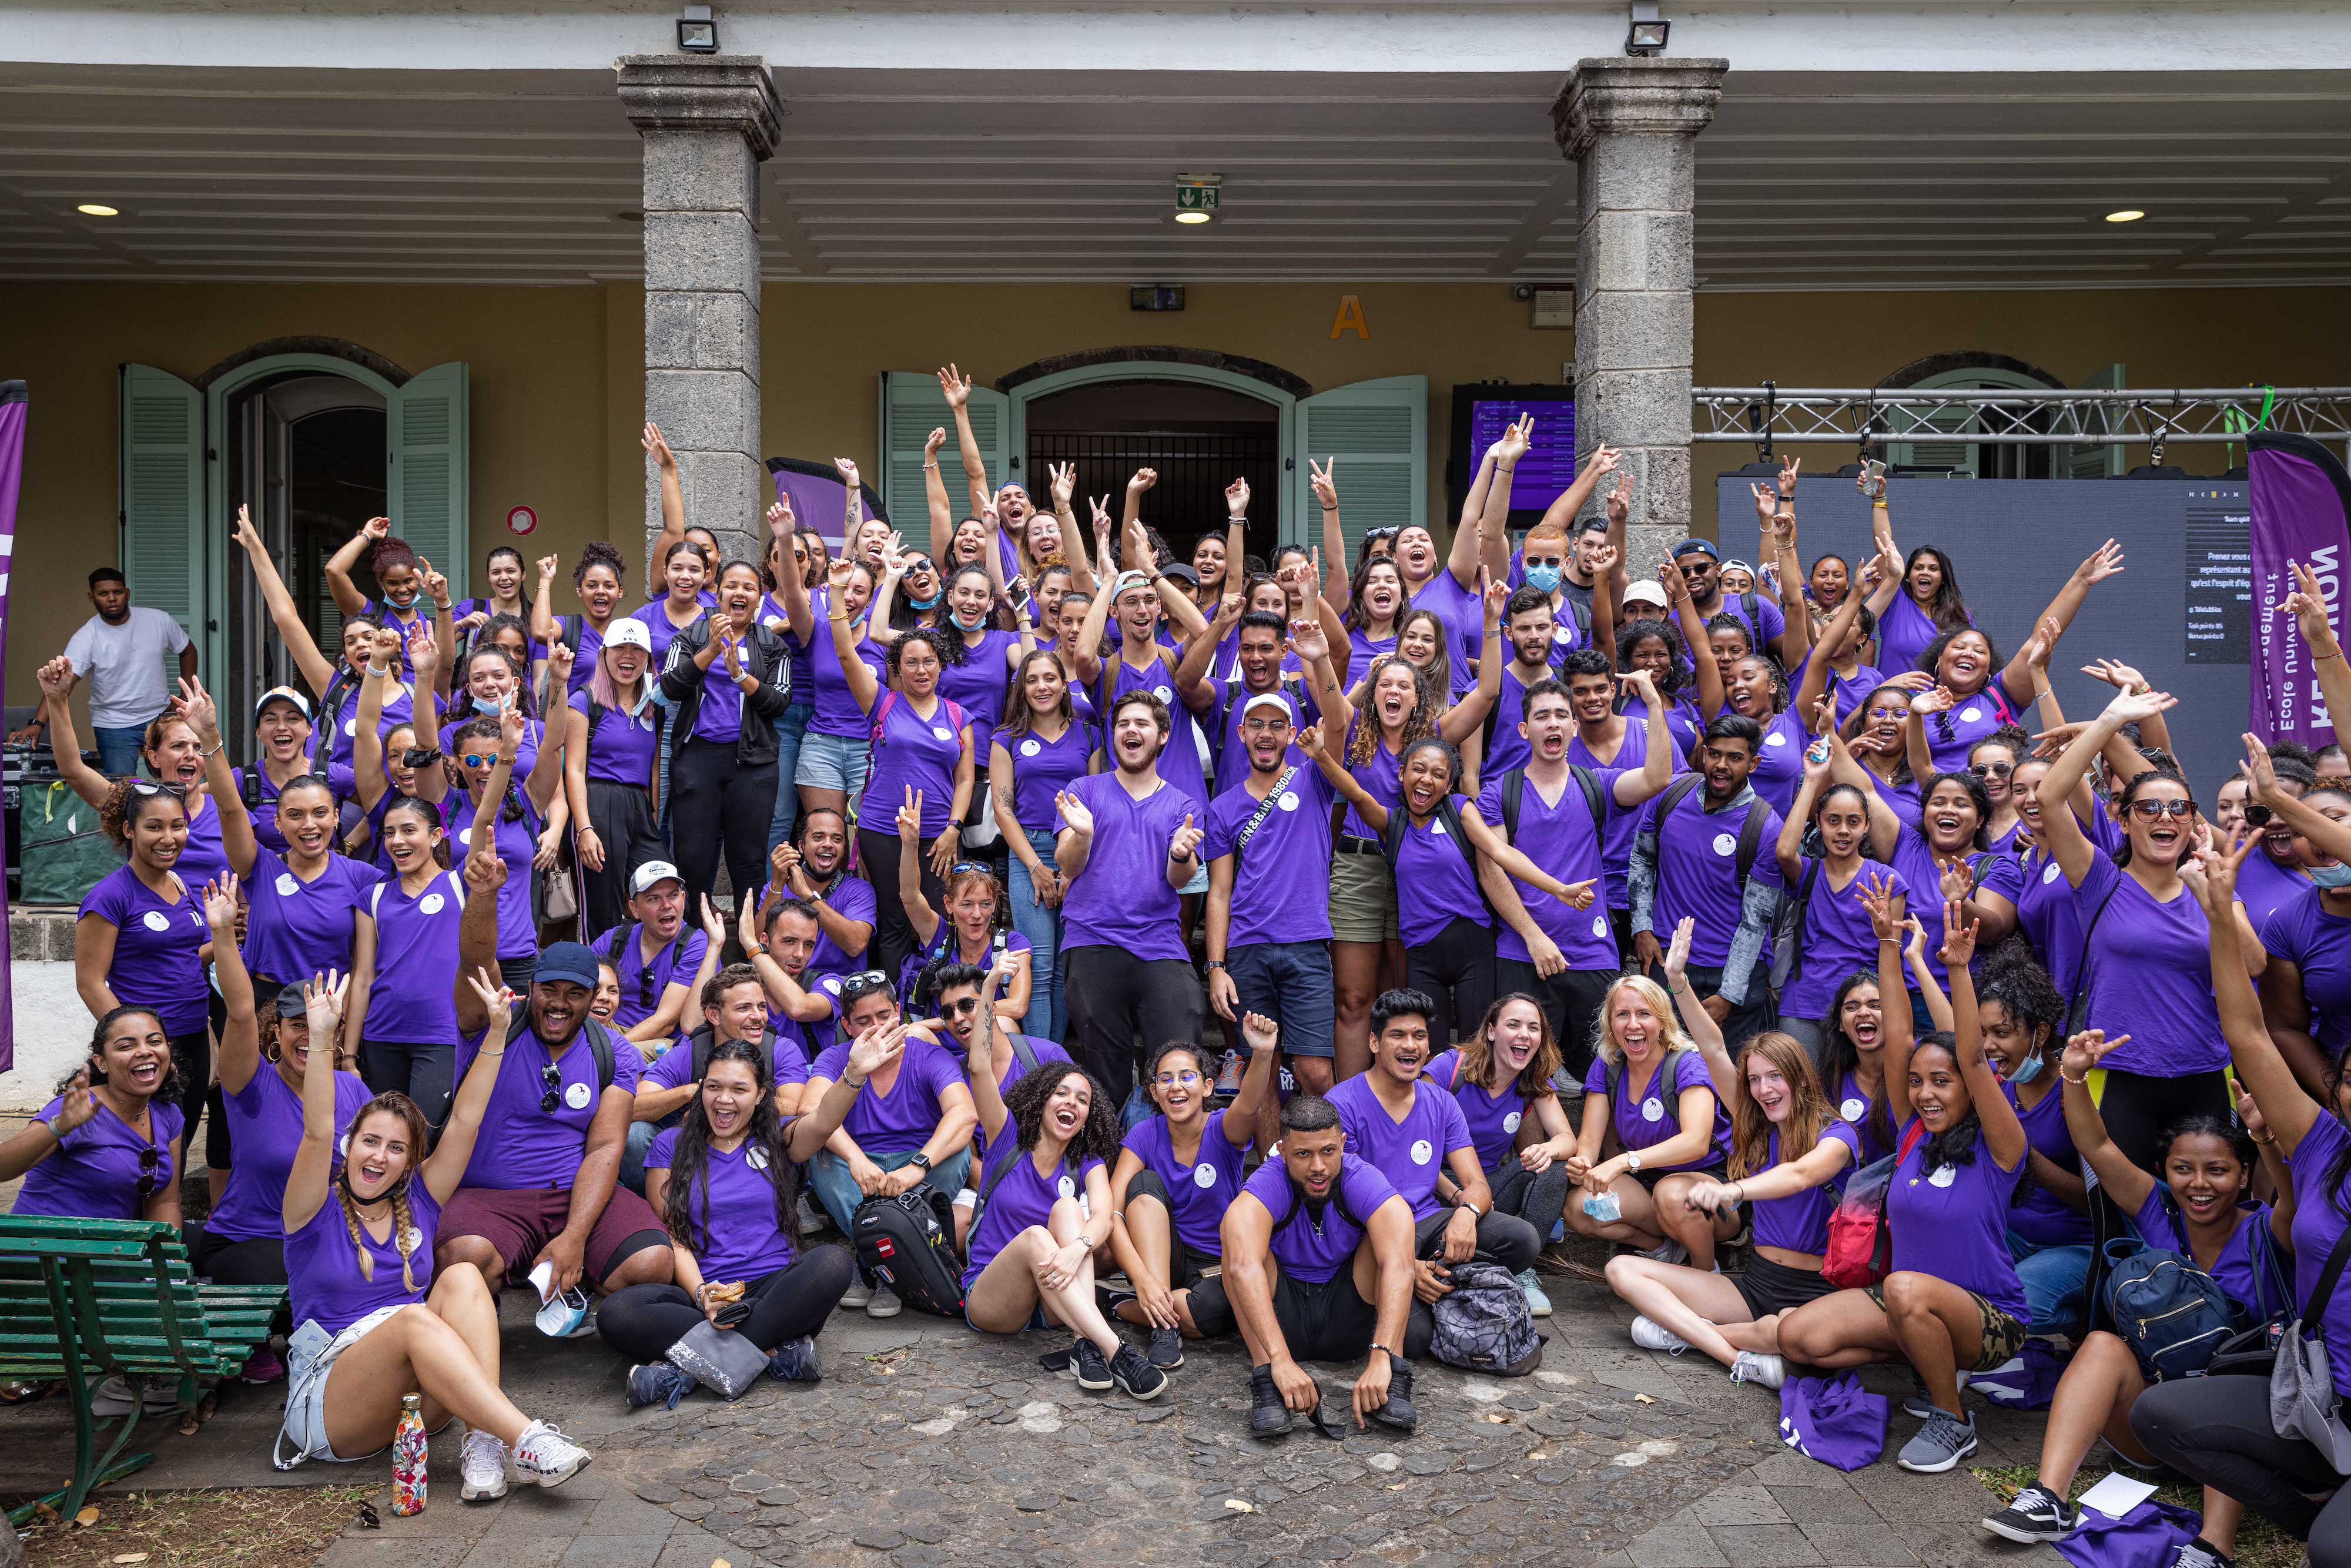 La Réunion : Une semaine d’intégration pour les étudiants de l’IAE